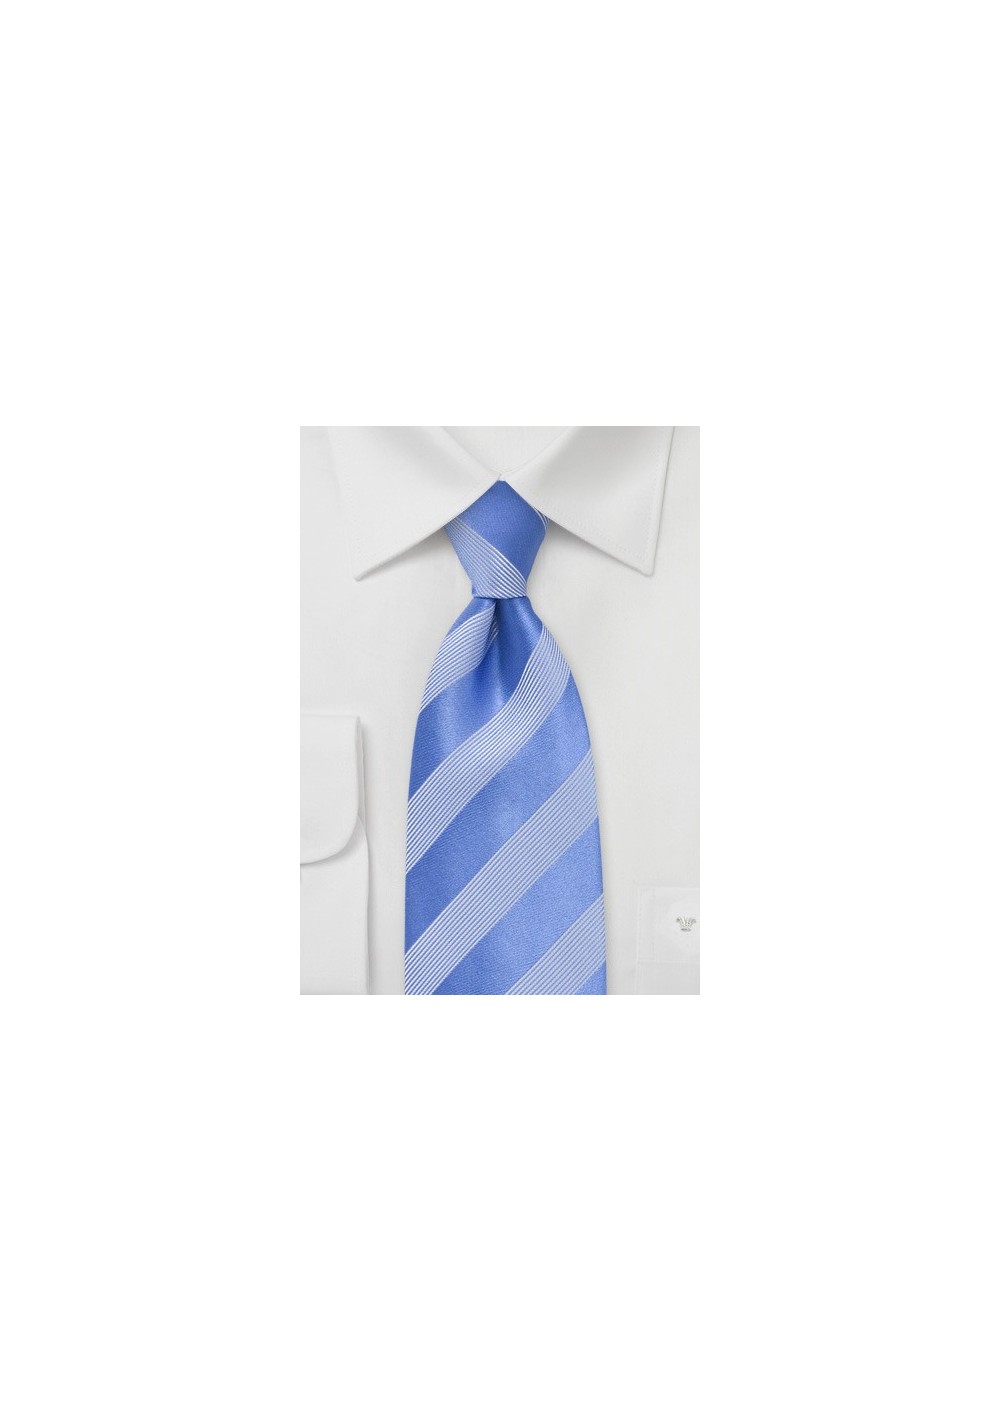 Hydrangea Blue and Silver Striped Tie